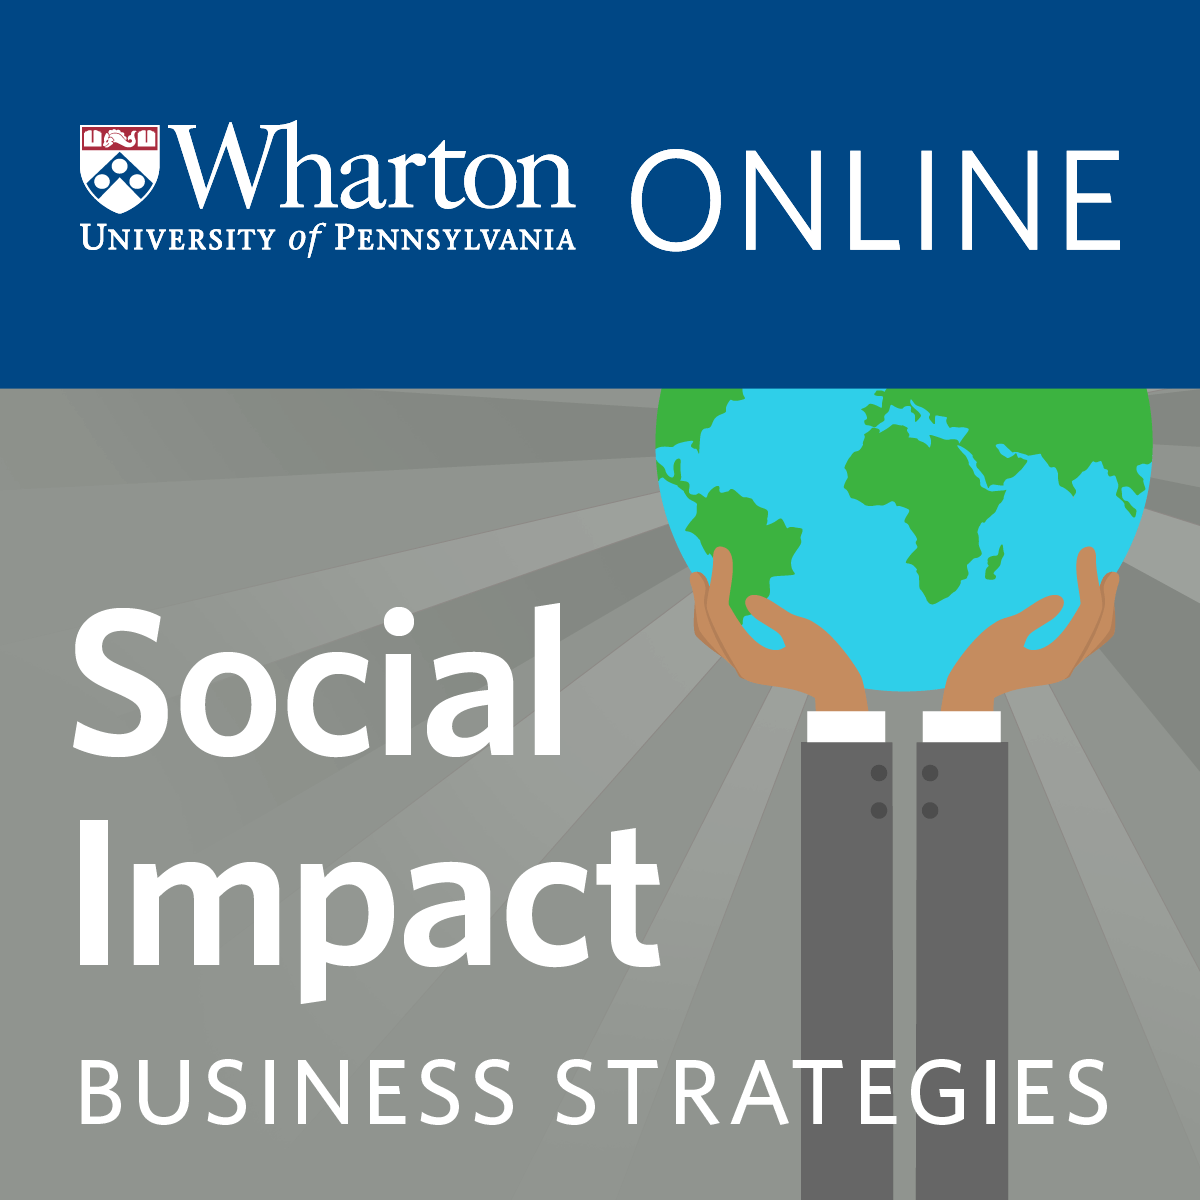 استراتژی های کسب و کار برای تأثیر اجتماعی